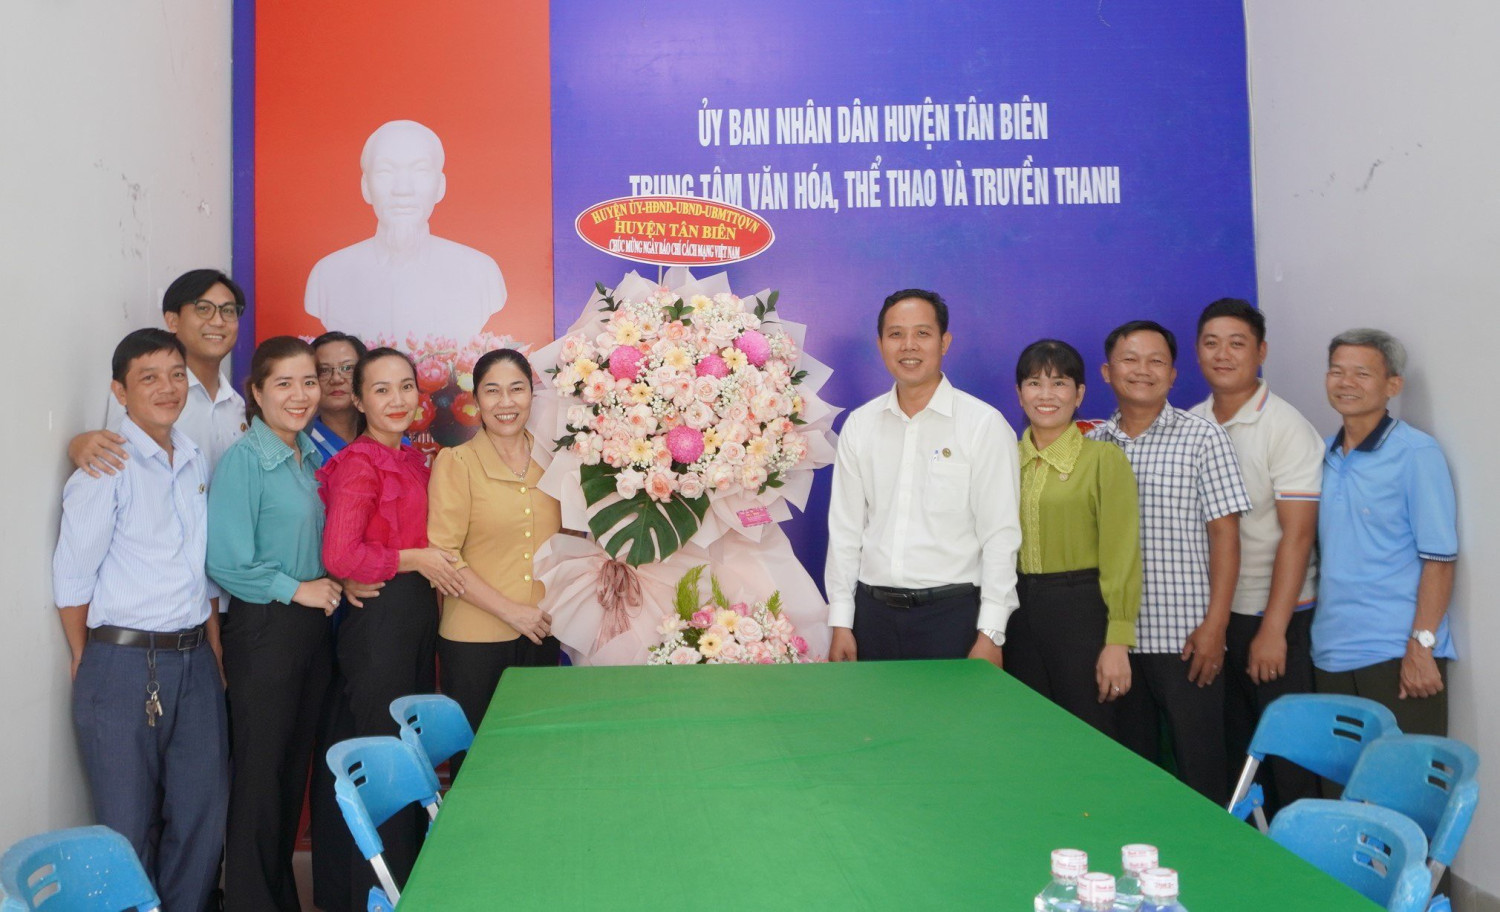 Chủ tịch UBND huyện Tân Biên Nguyễn Thị Thành thăm chúc mừng nhân ngày báo chí cách mạng Việt Nam 21.6